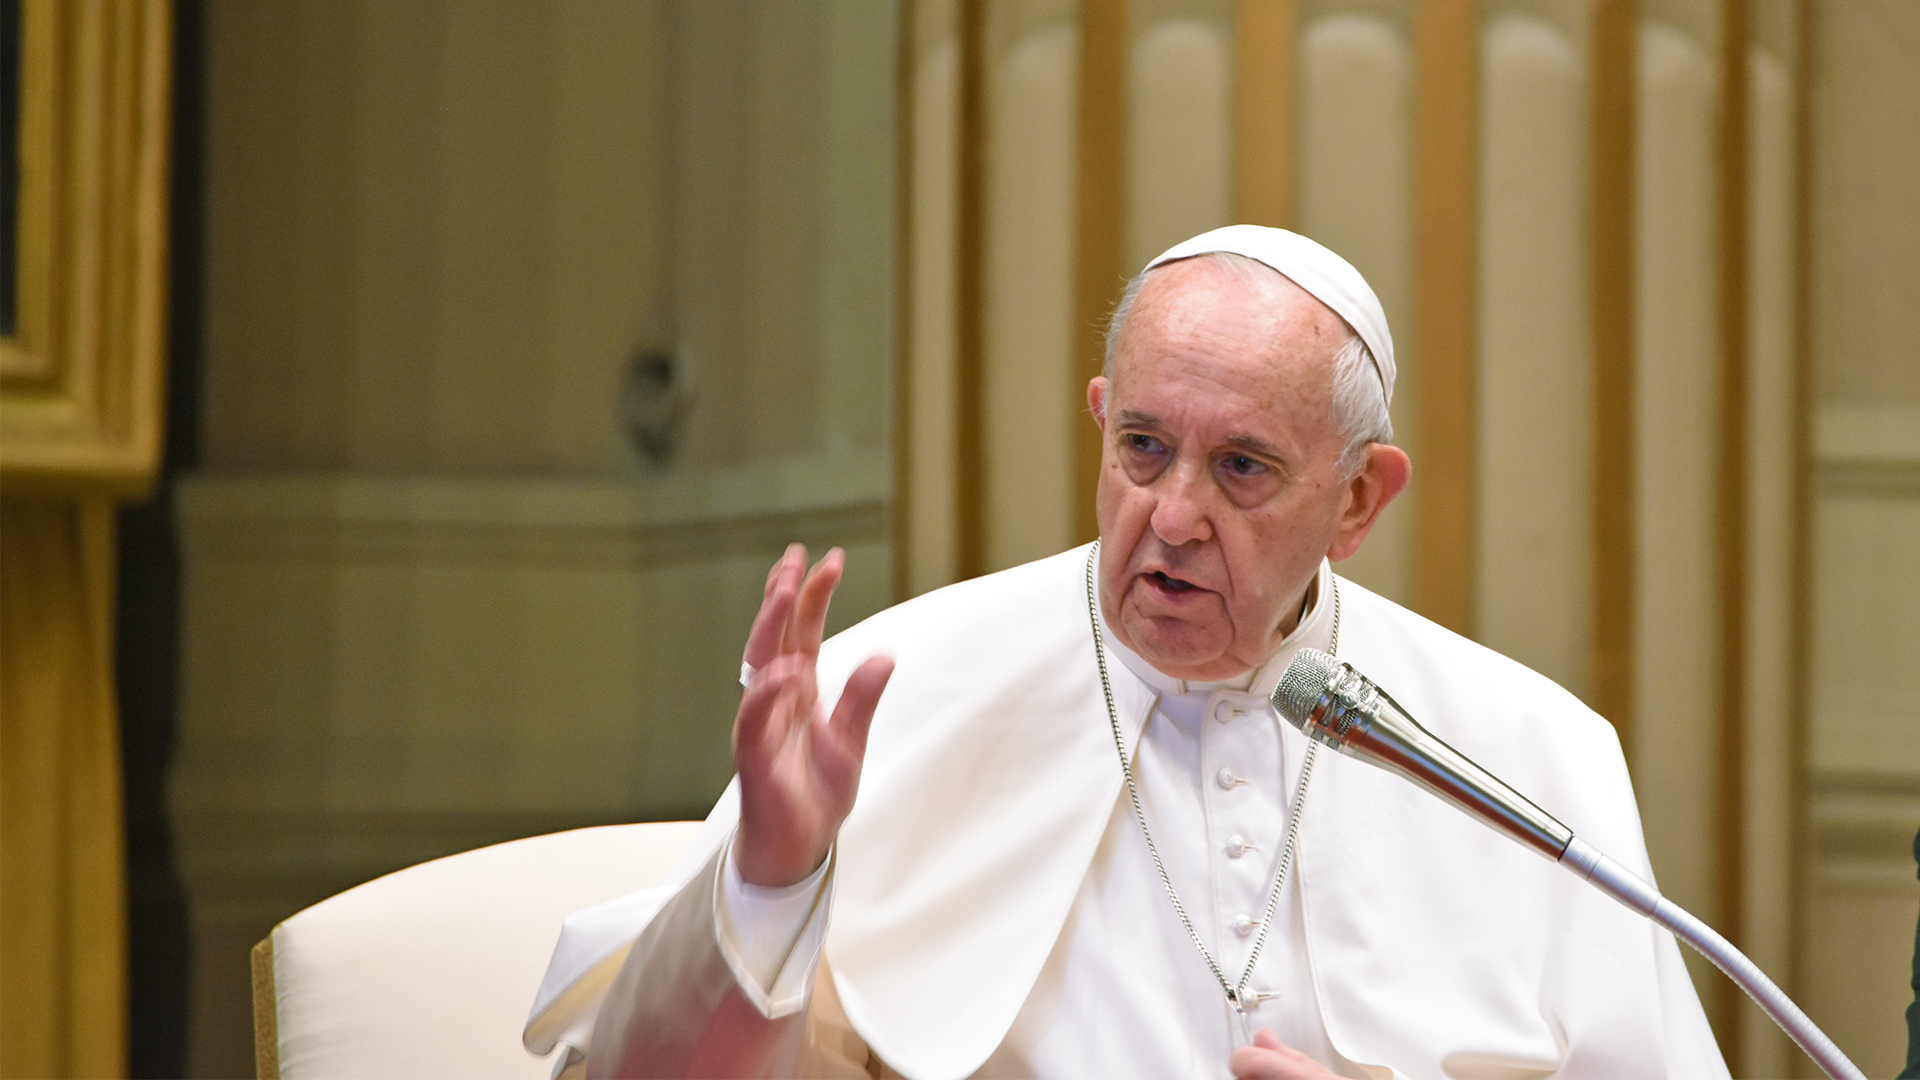 Pour le pape François, la paix se construit dans un dialogue respectueux  | DR